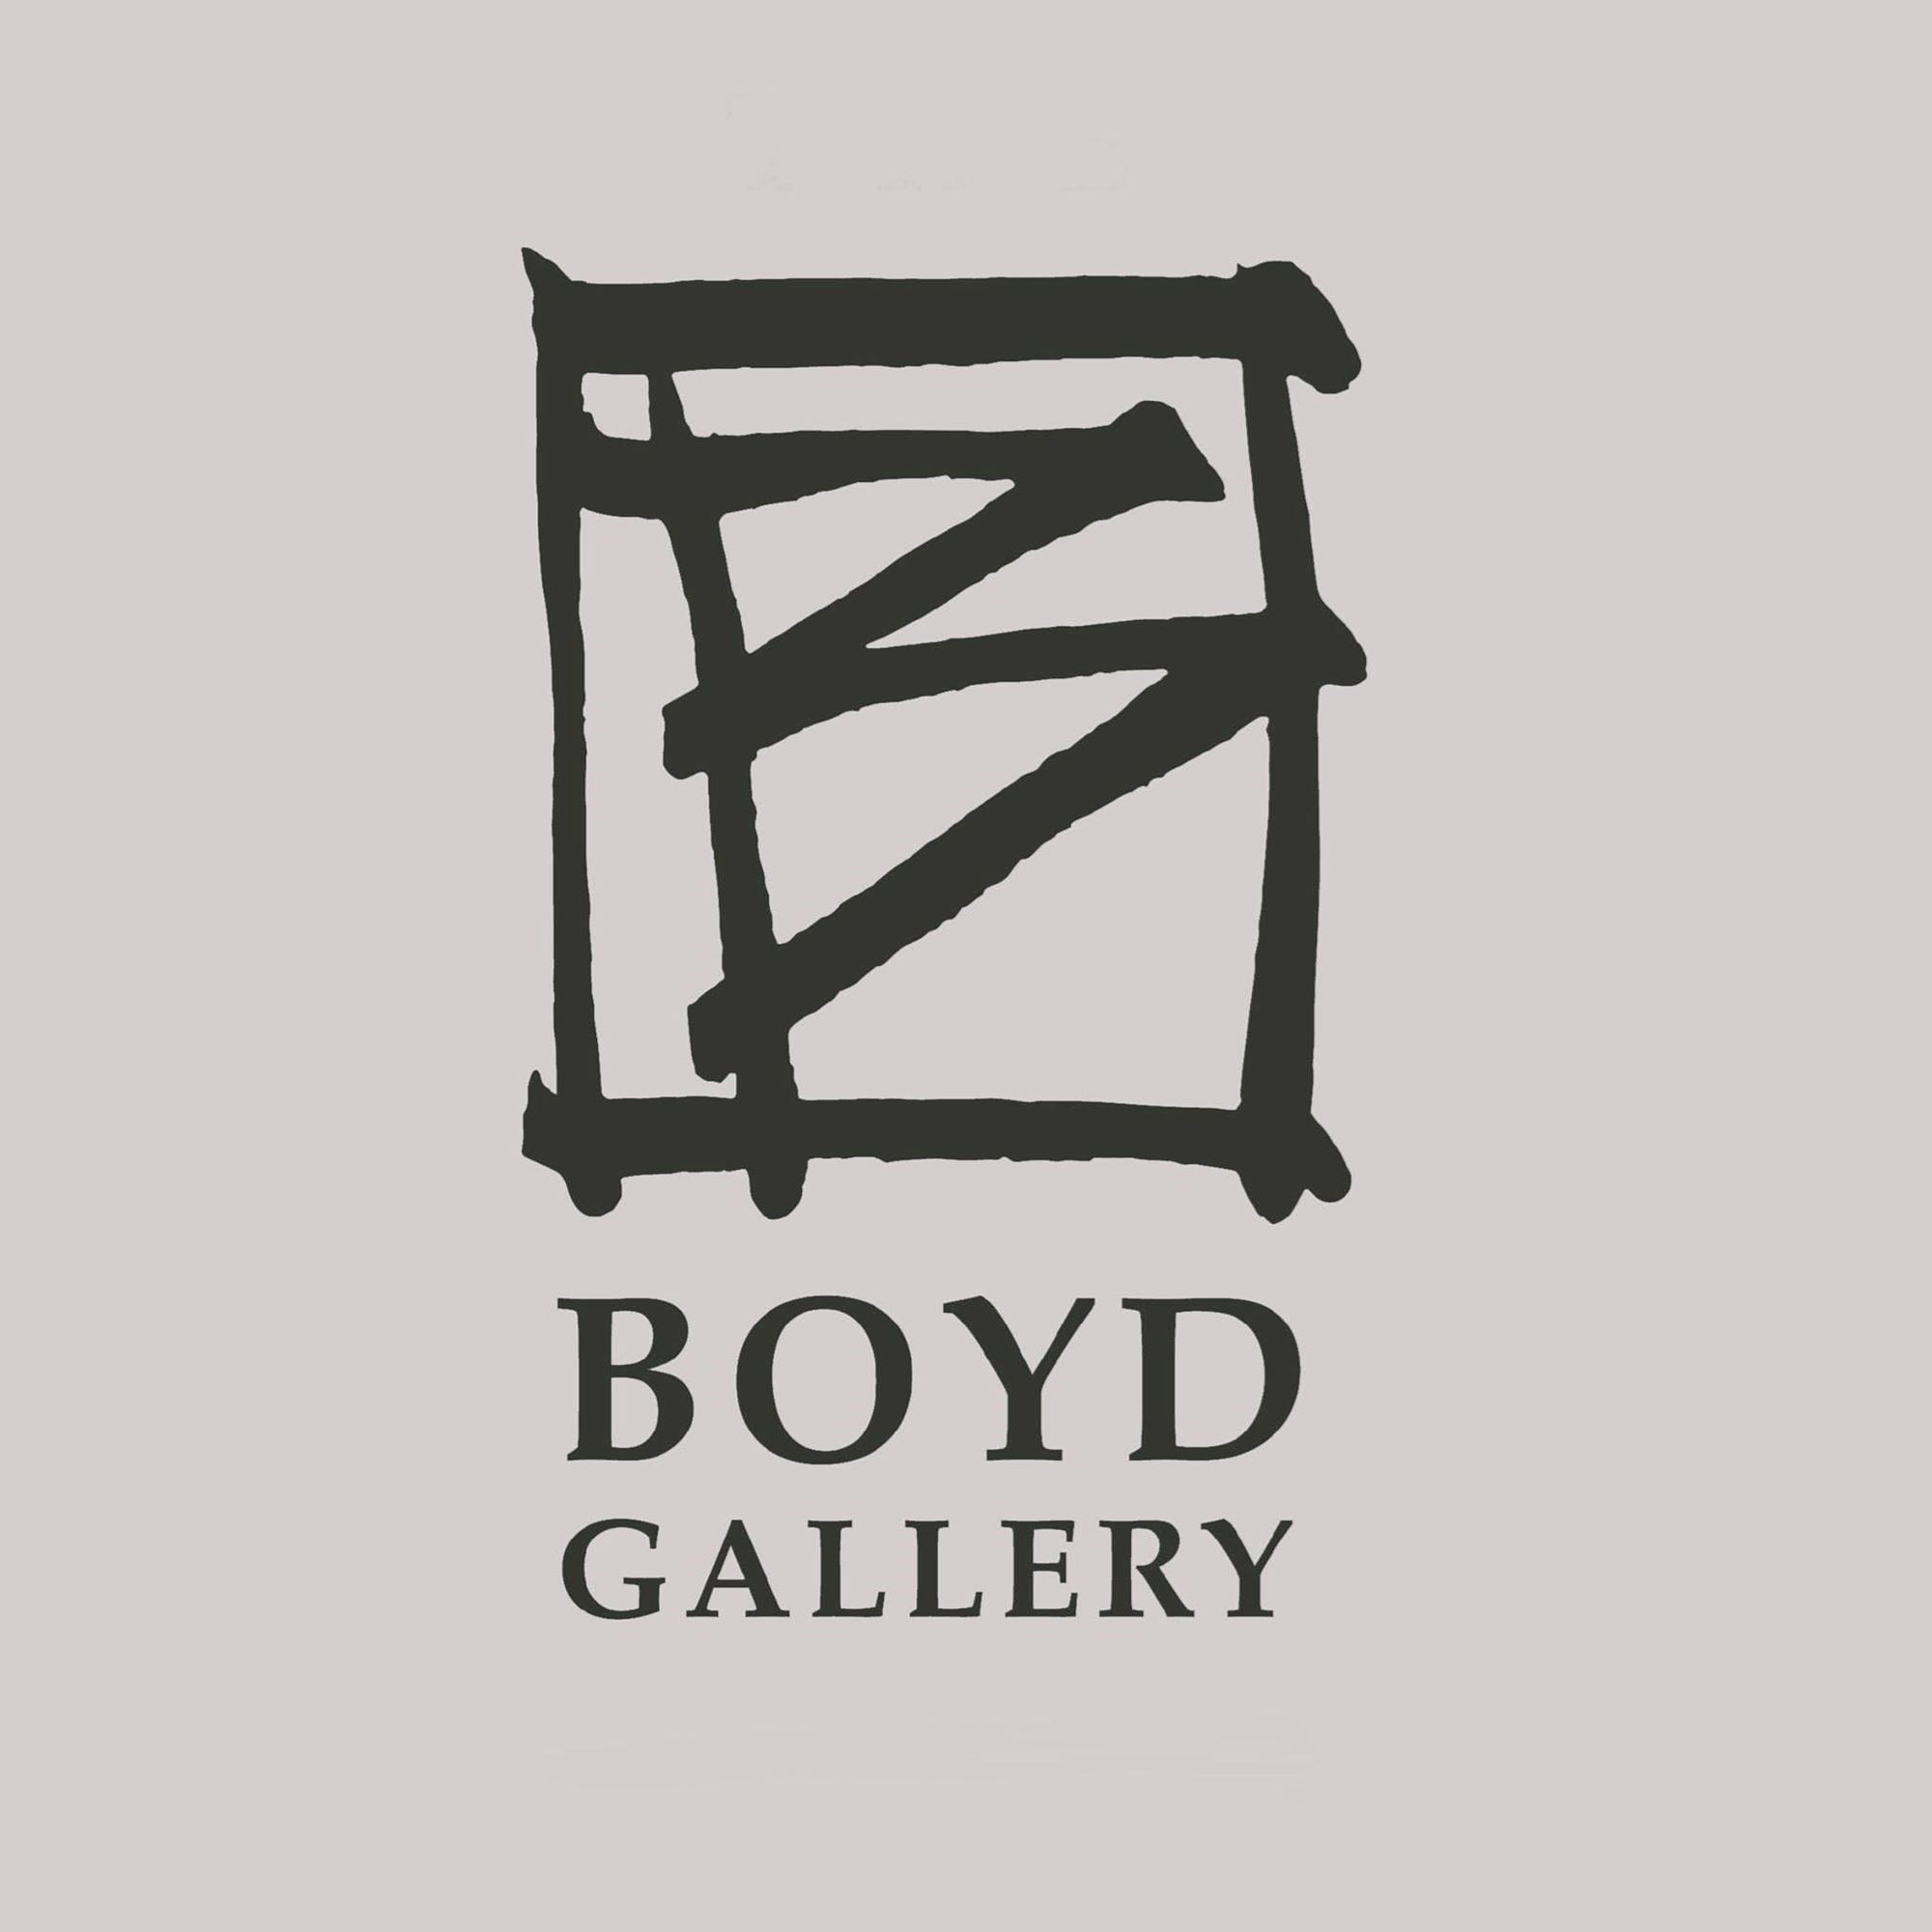 The Boyd Gallery